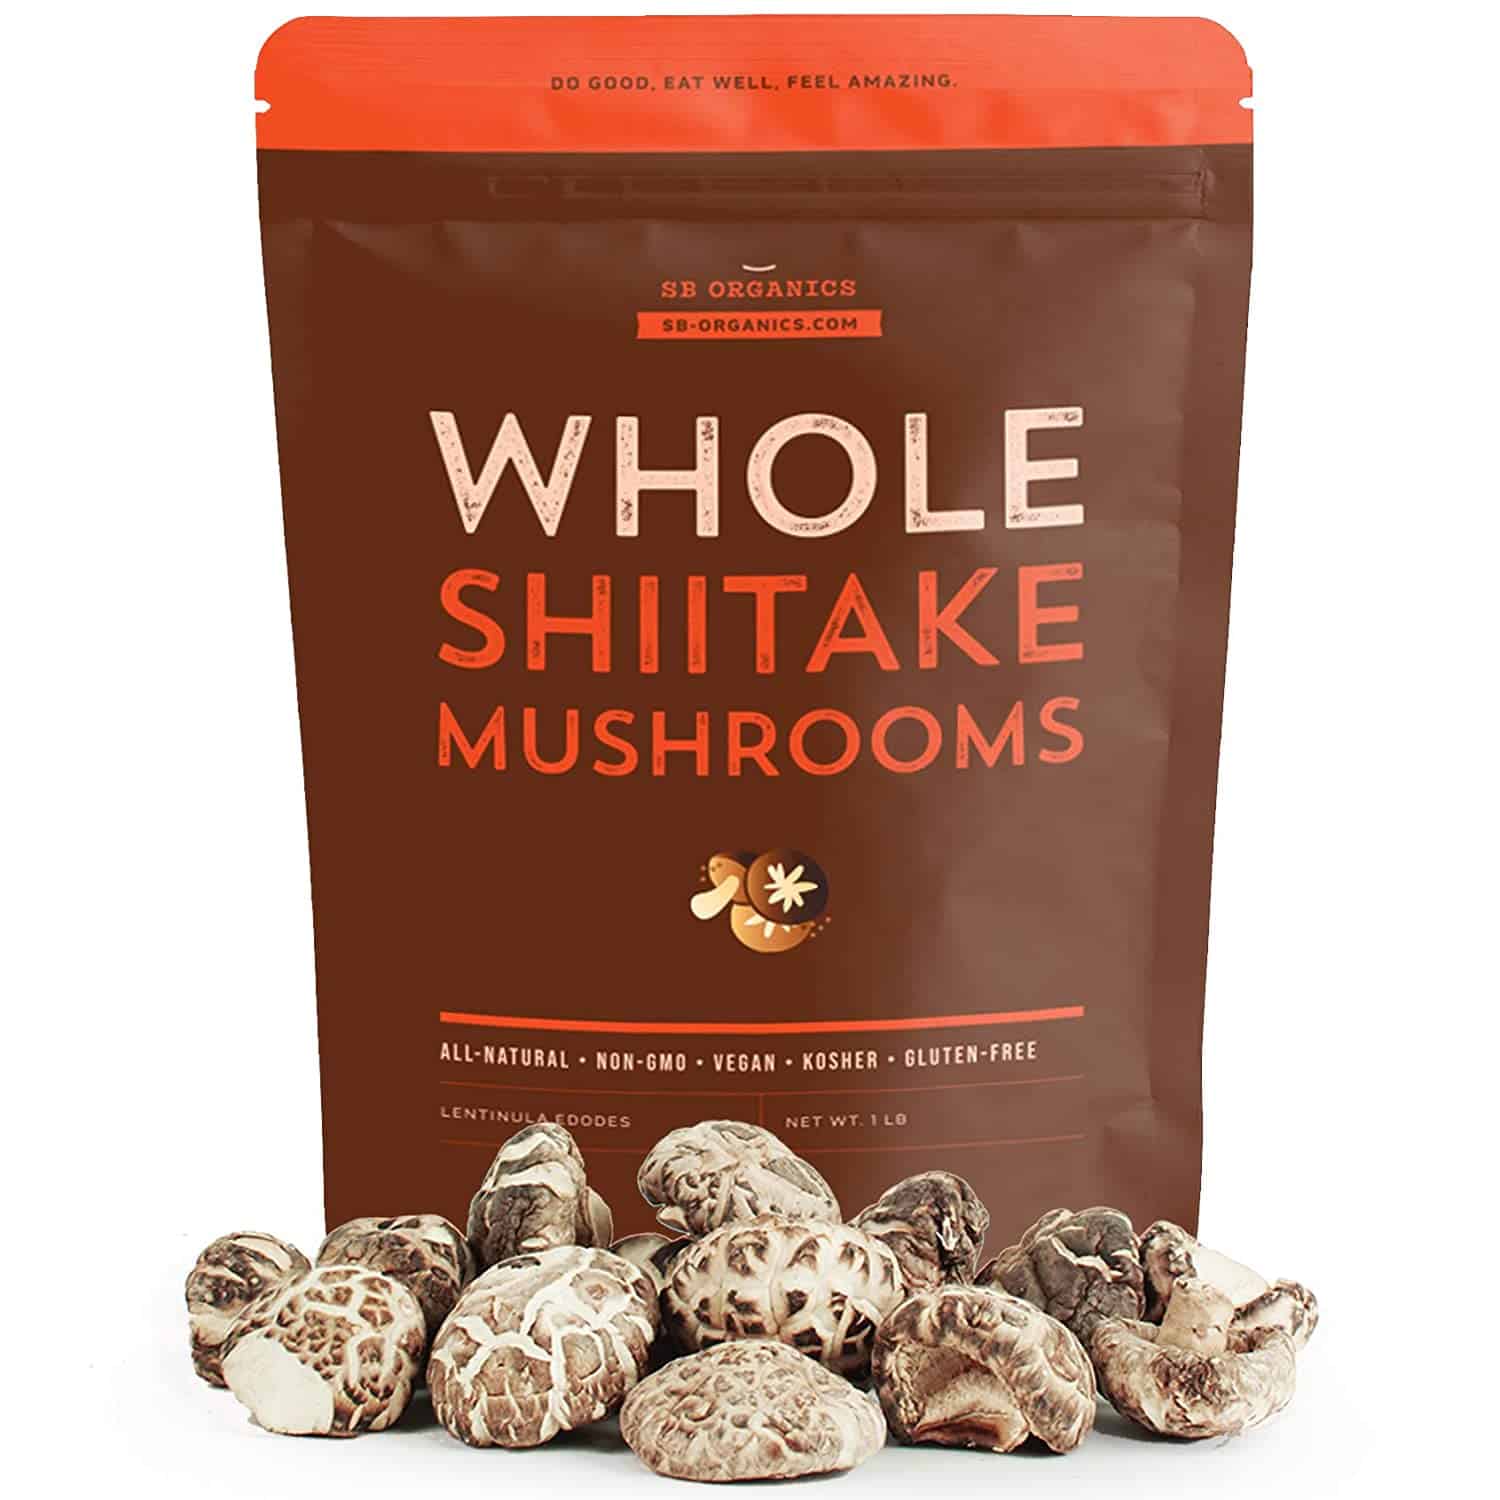 Cogumelos shiitake secos